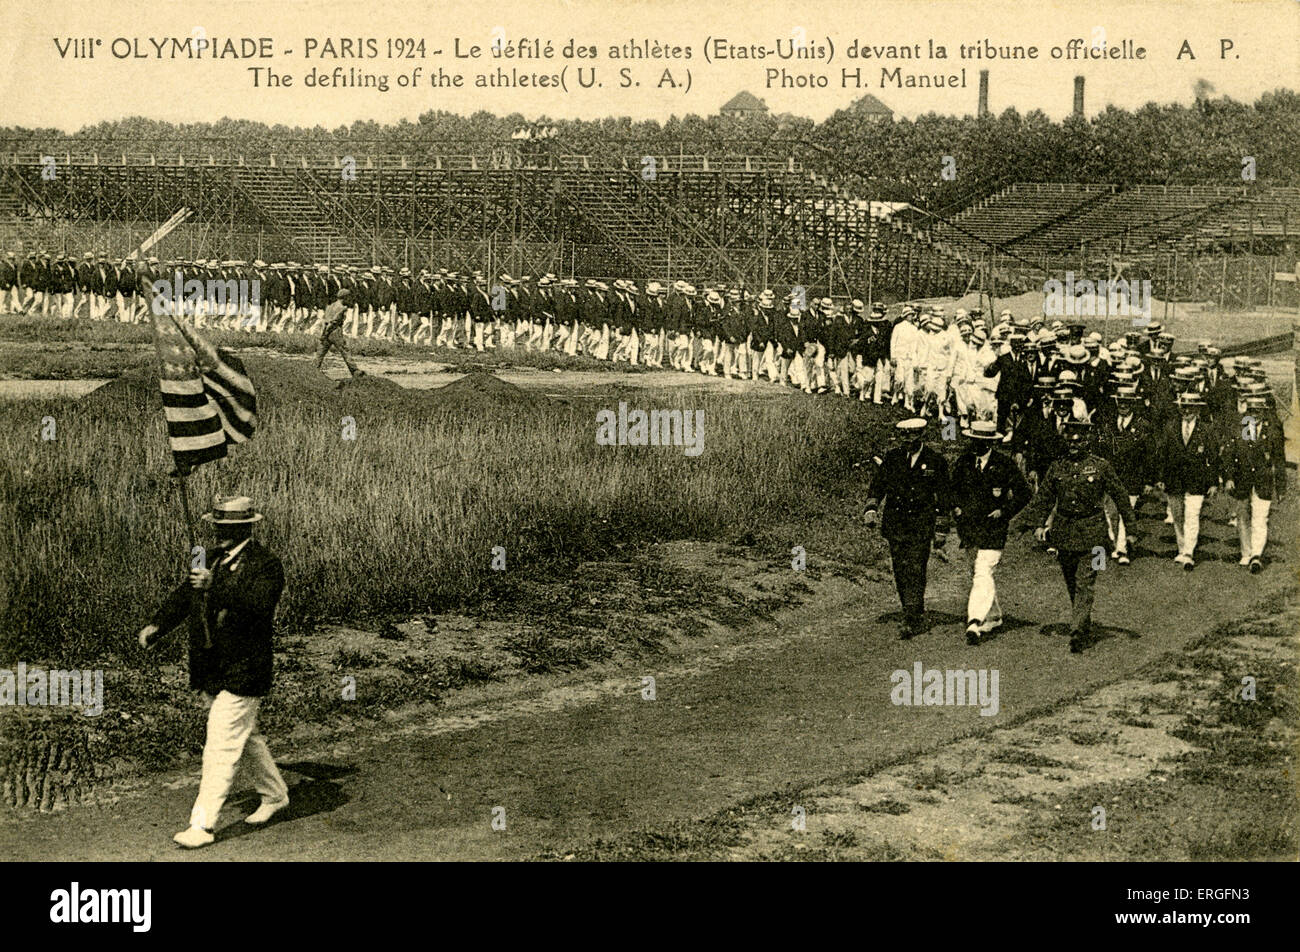 Défilé des Jeux Olympiques 1928 Paris France. 8ème Olympiade. Les athlètes américains marchant passé. Photo par H Manuel. Jeux Olympiques Banque D'Images